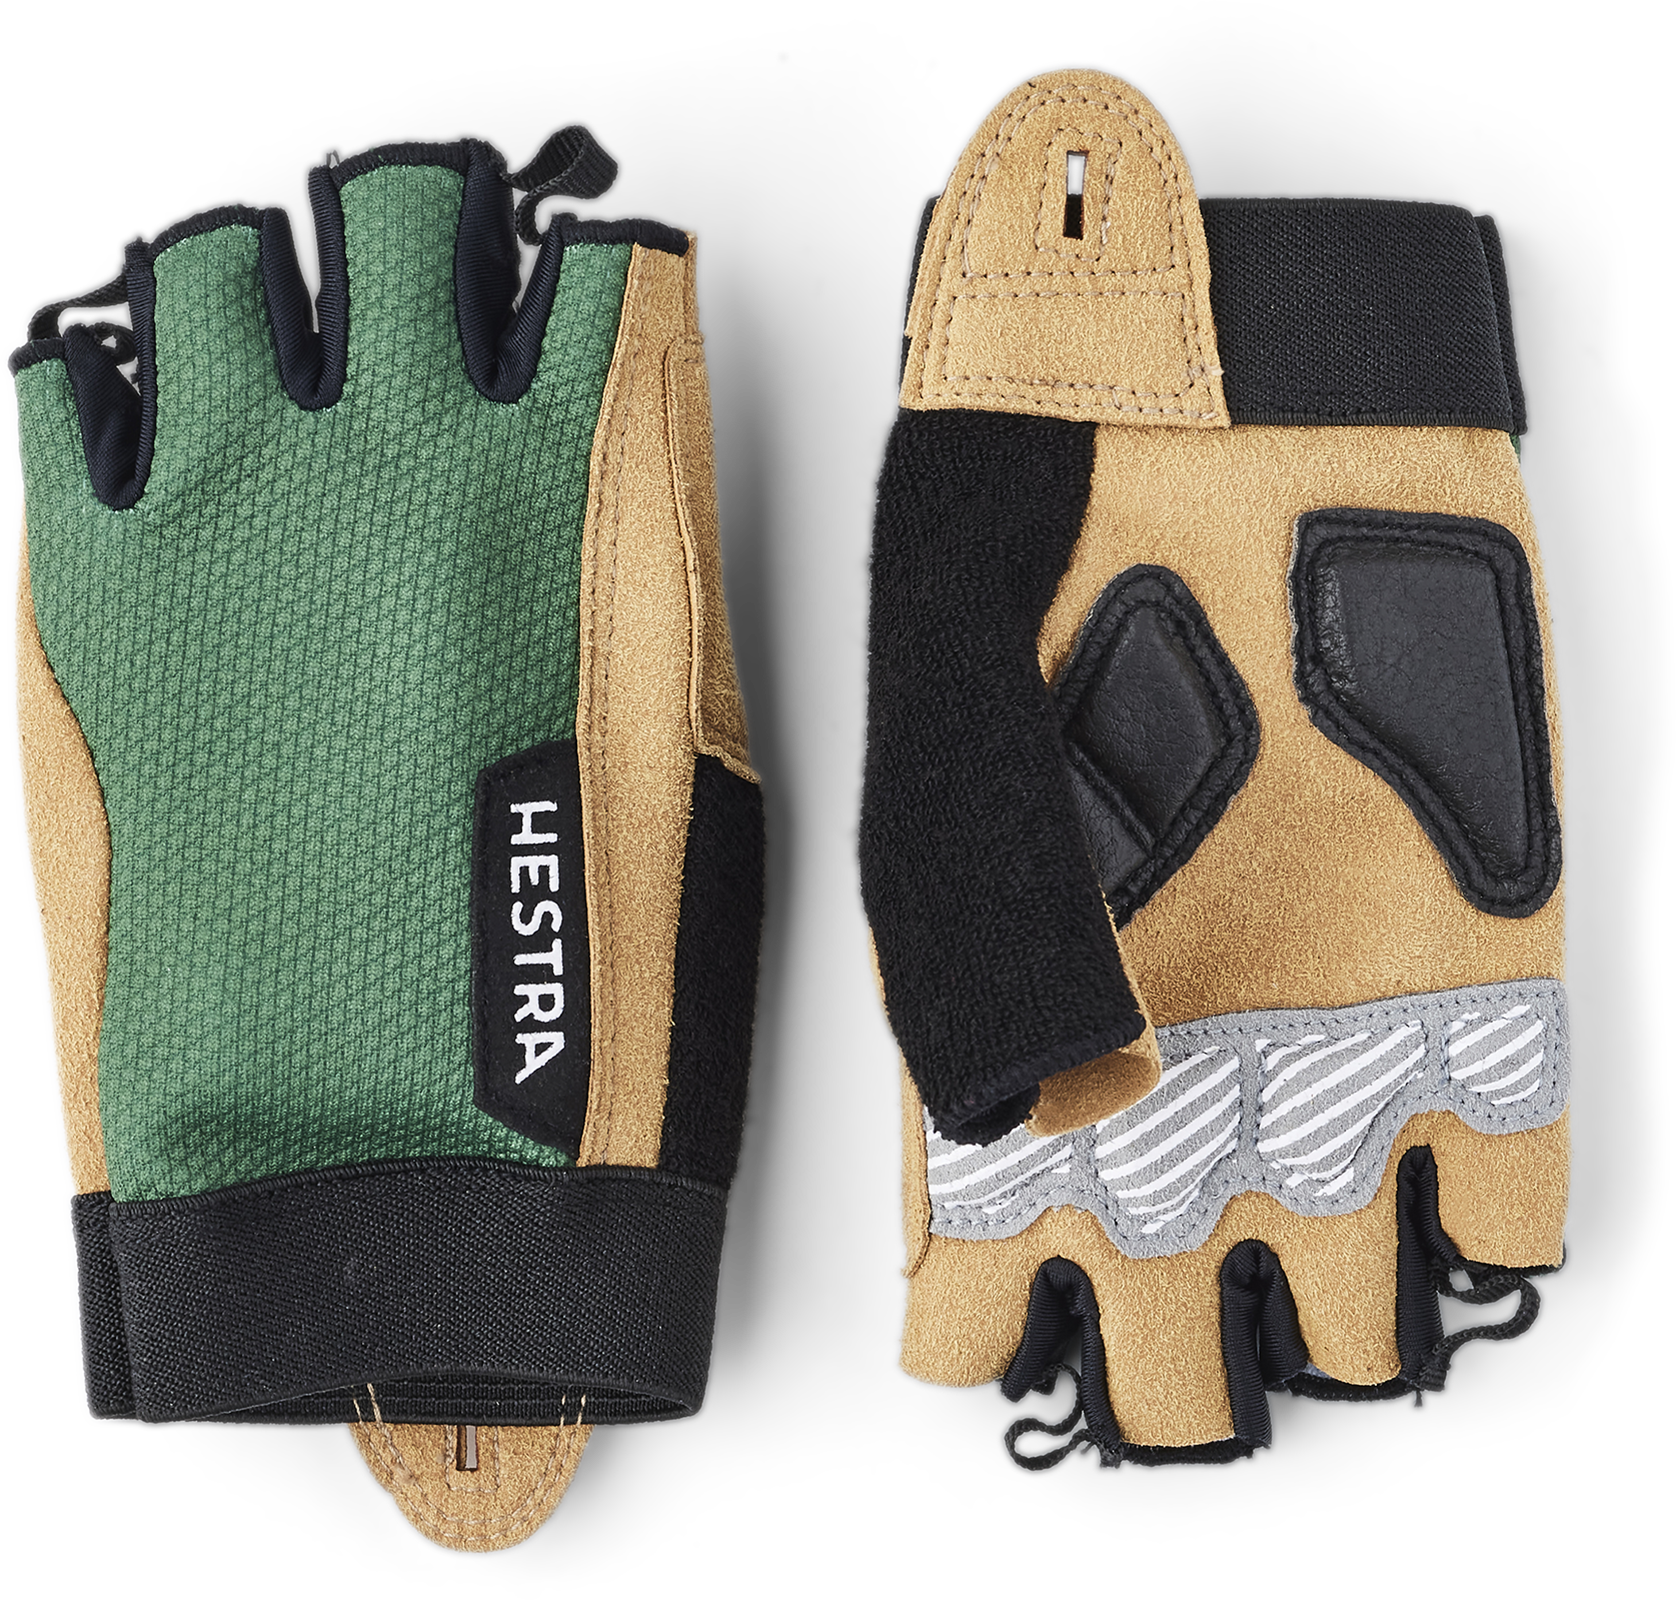 5-Finger Durable Lightweight Glove for Mountain Biking Hestra Ergo Grip Enduro Breathable Protective Full Finger Bike Glove for Men/Women